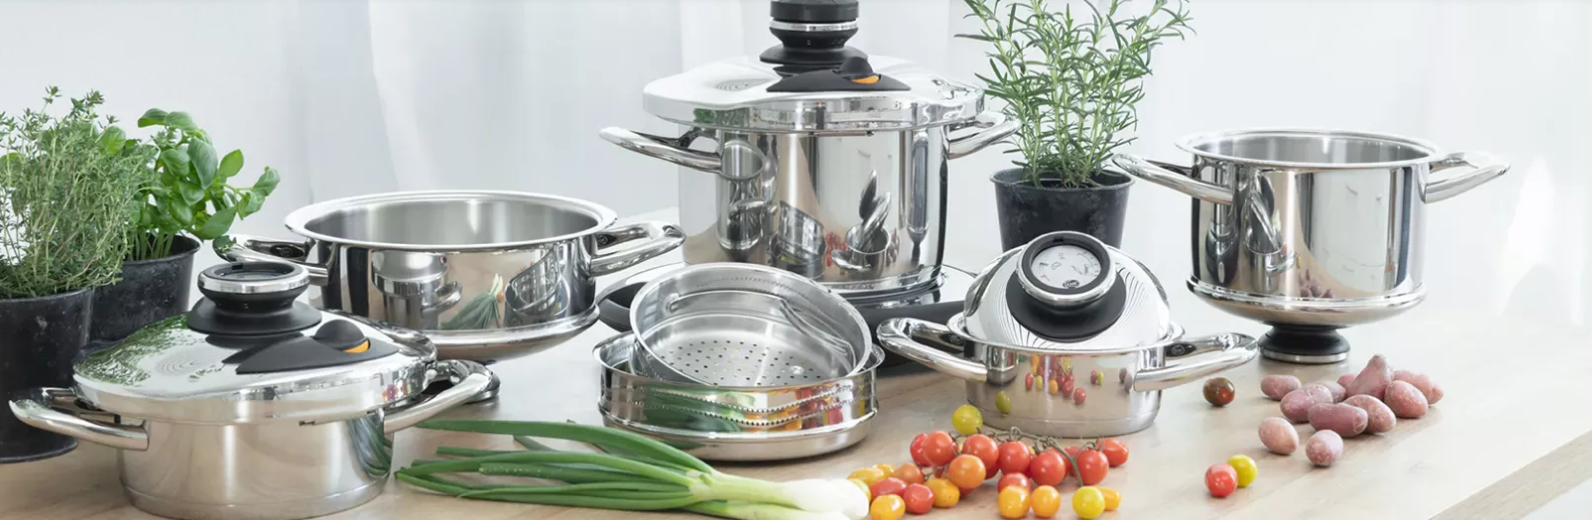 AMC presenta sus sistemas de cocina premium - Noticias de Electro en  Alimarket